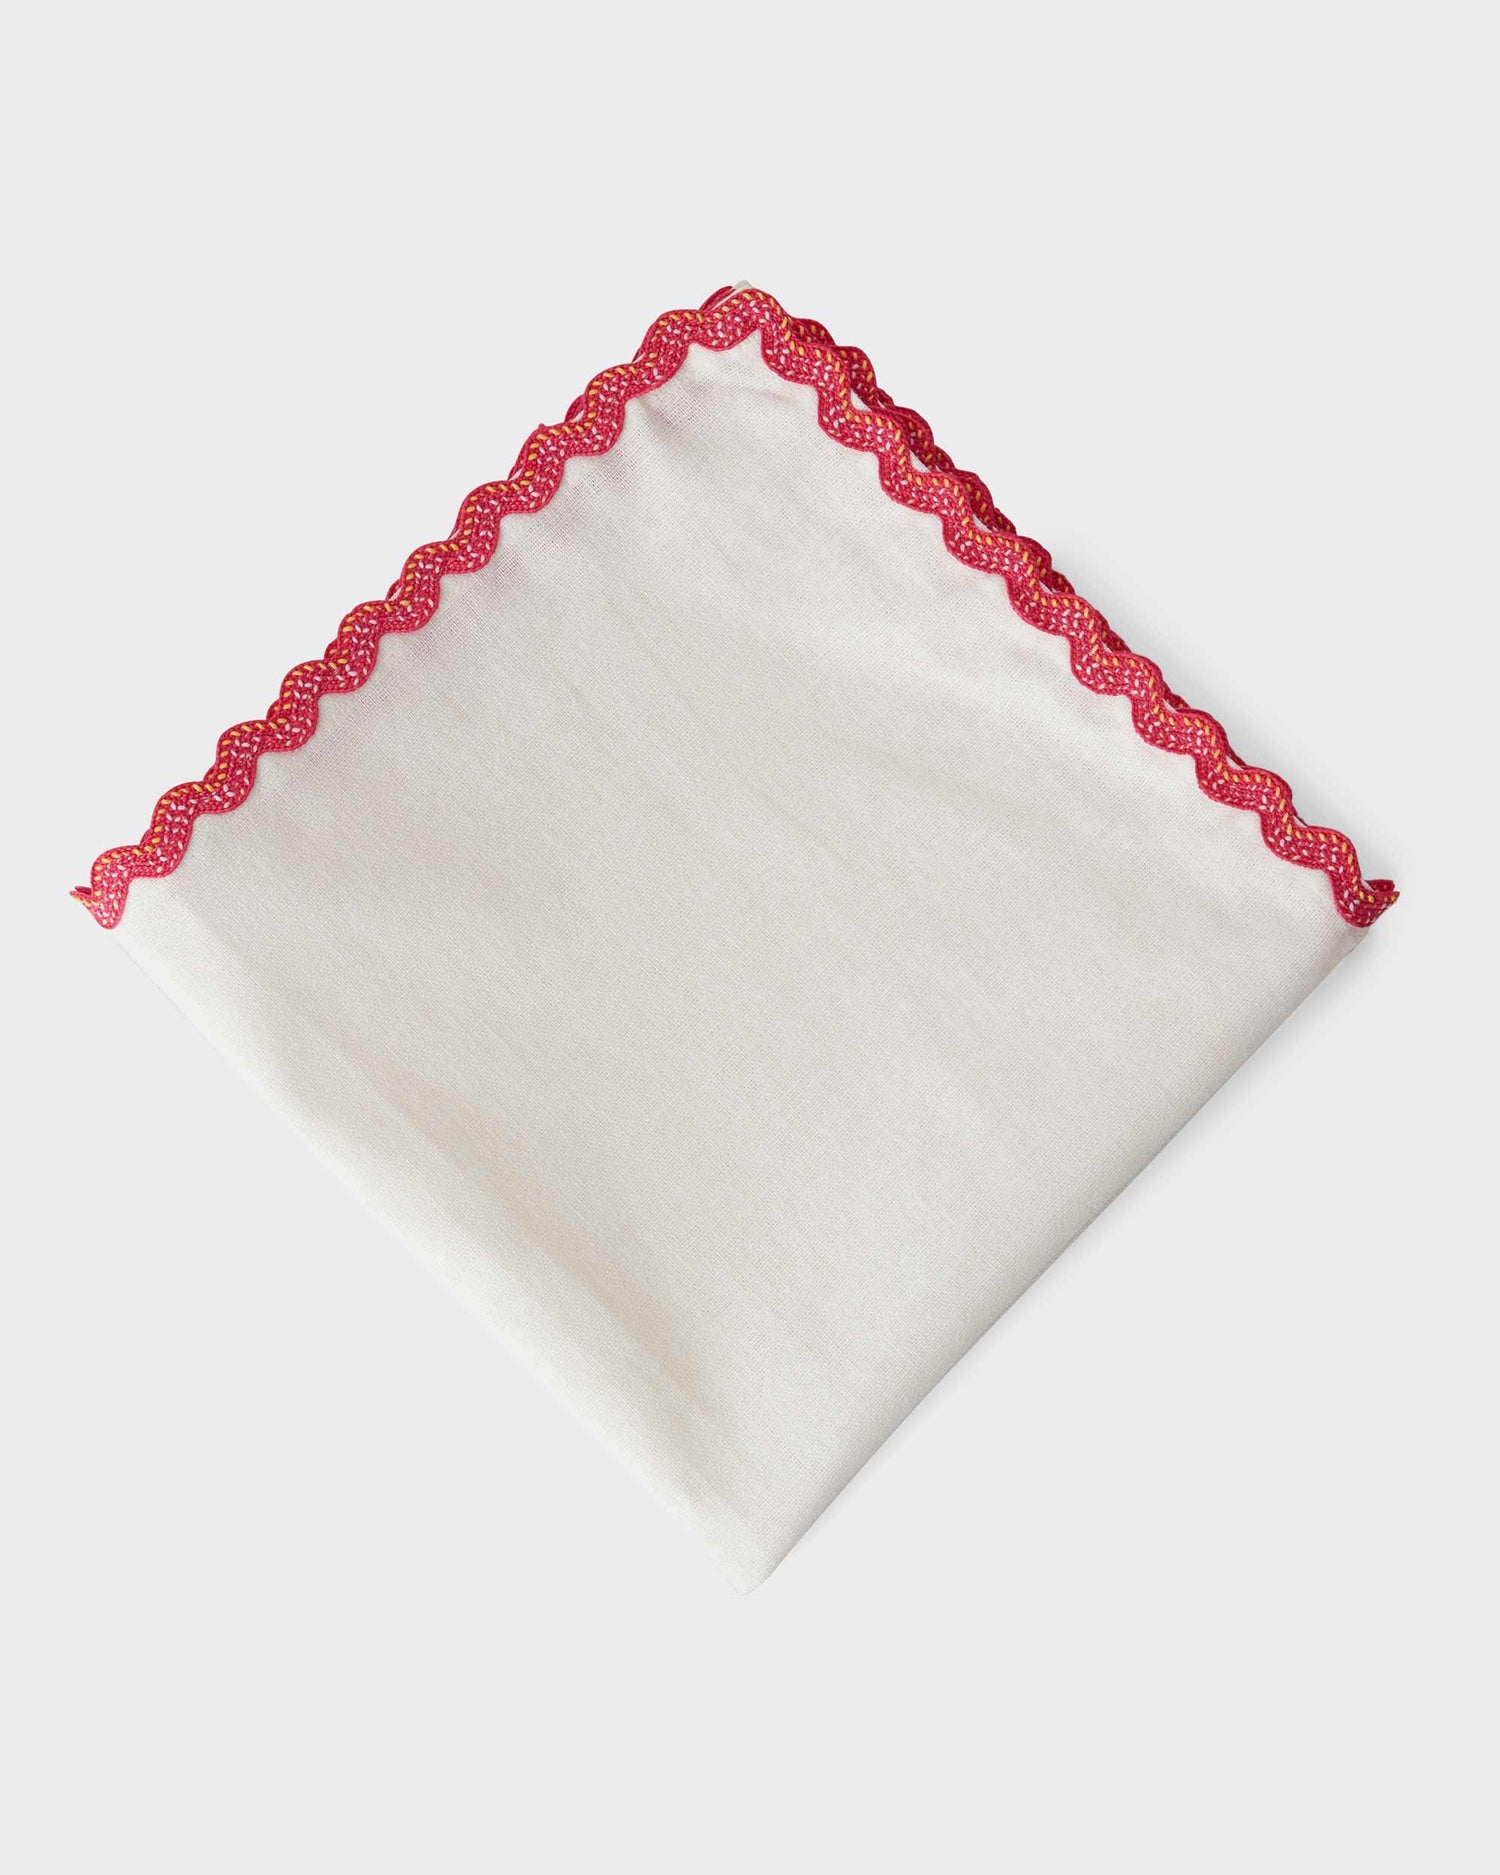 Linen Napkin - Dark pink small ribbon - 40x40cm - Von Home